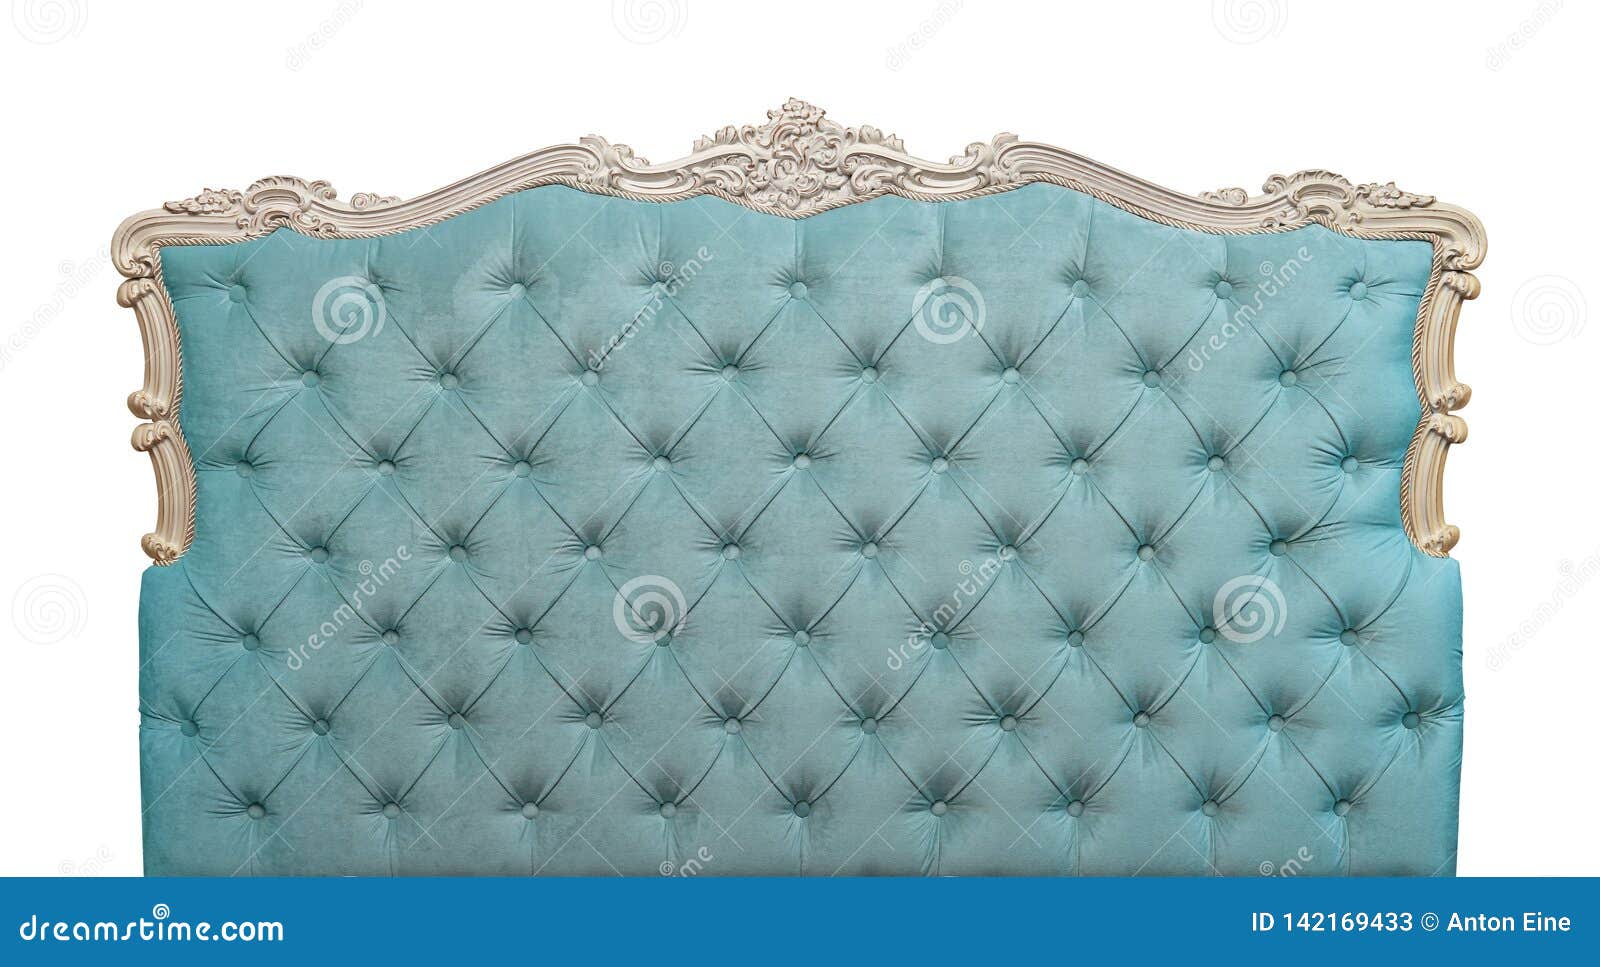 blue velvet bed headboard  on white